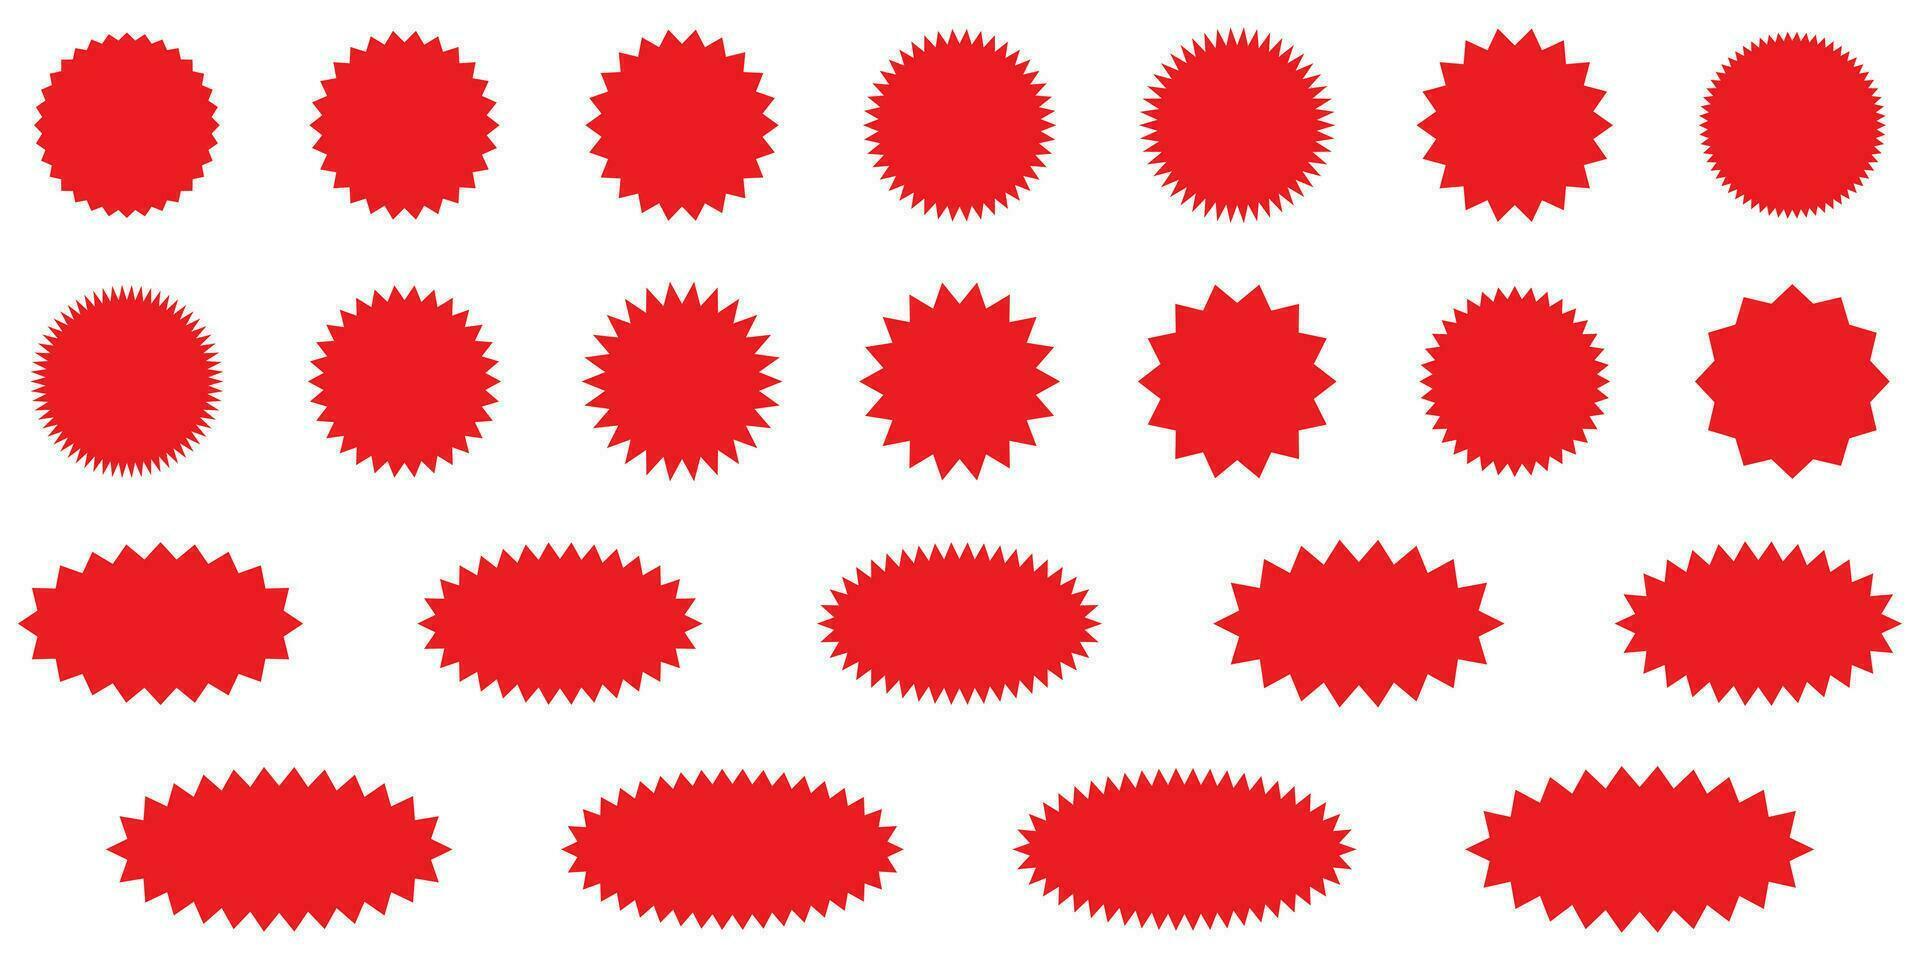 starburst röd klistermärke uppsättning - samling av särskild erbjudande försäljning runda och oval sunburst etiketter och knappar isolerat på vit bakgrund. klistermärken och märken med stjärna kanter för promo reklam. vektor